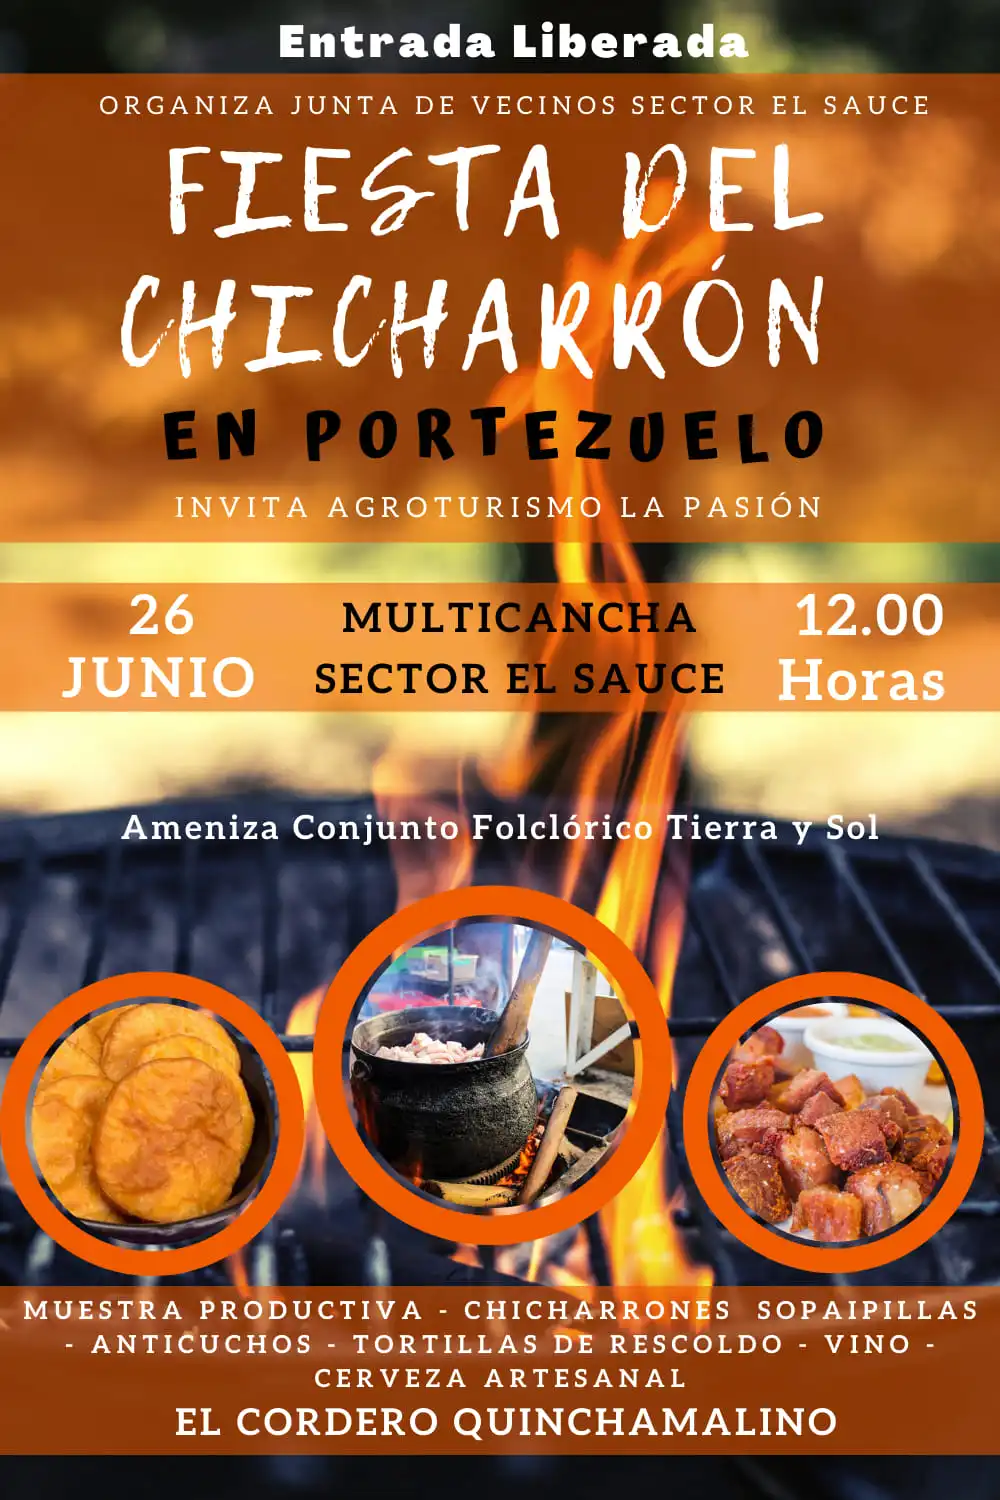 Fiesta del Chicharrón 2022 en Protezuelo
Domingo 26 de Junio en la Cancha del Sector El Sauce en la comuna de Portezuelo.